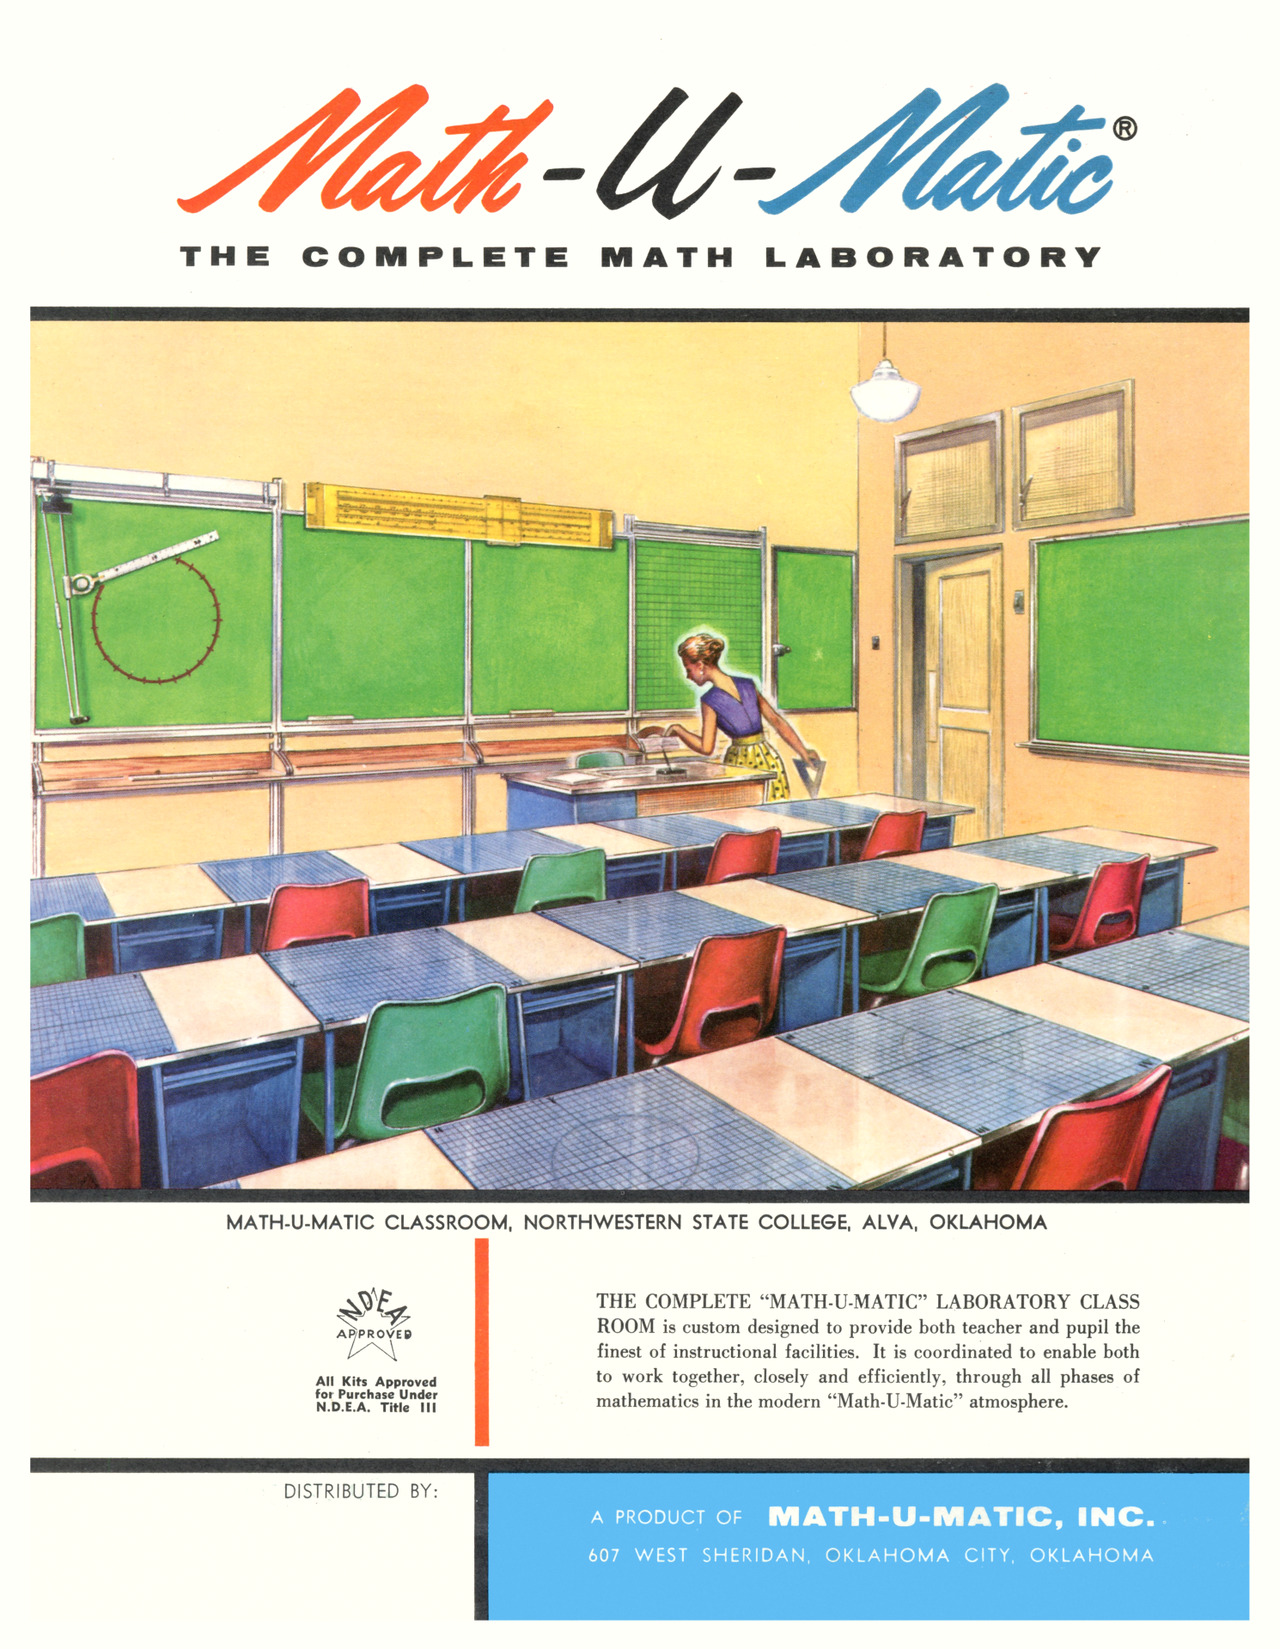 Math-U-Matic, Inc. - 1962